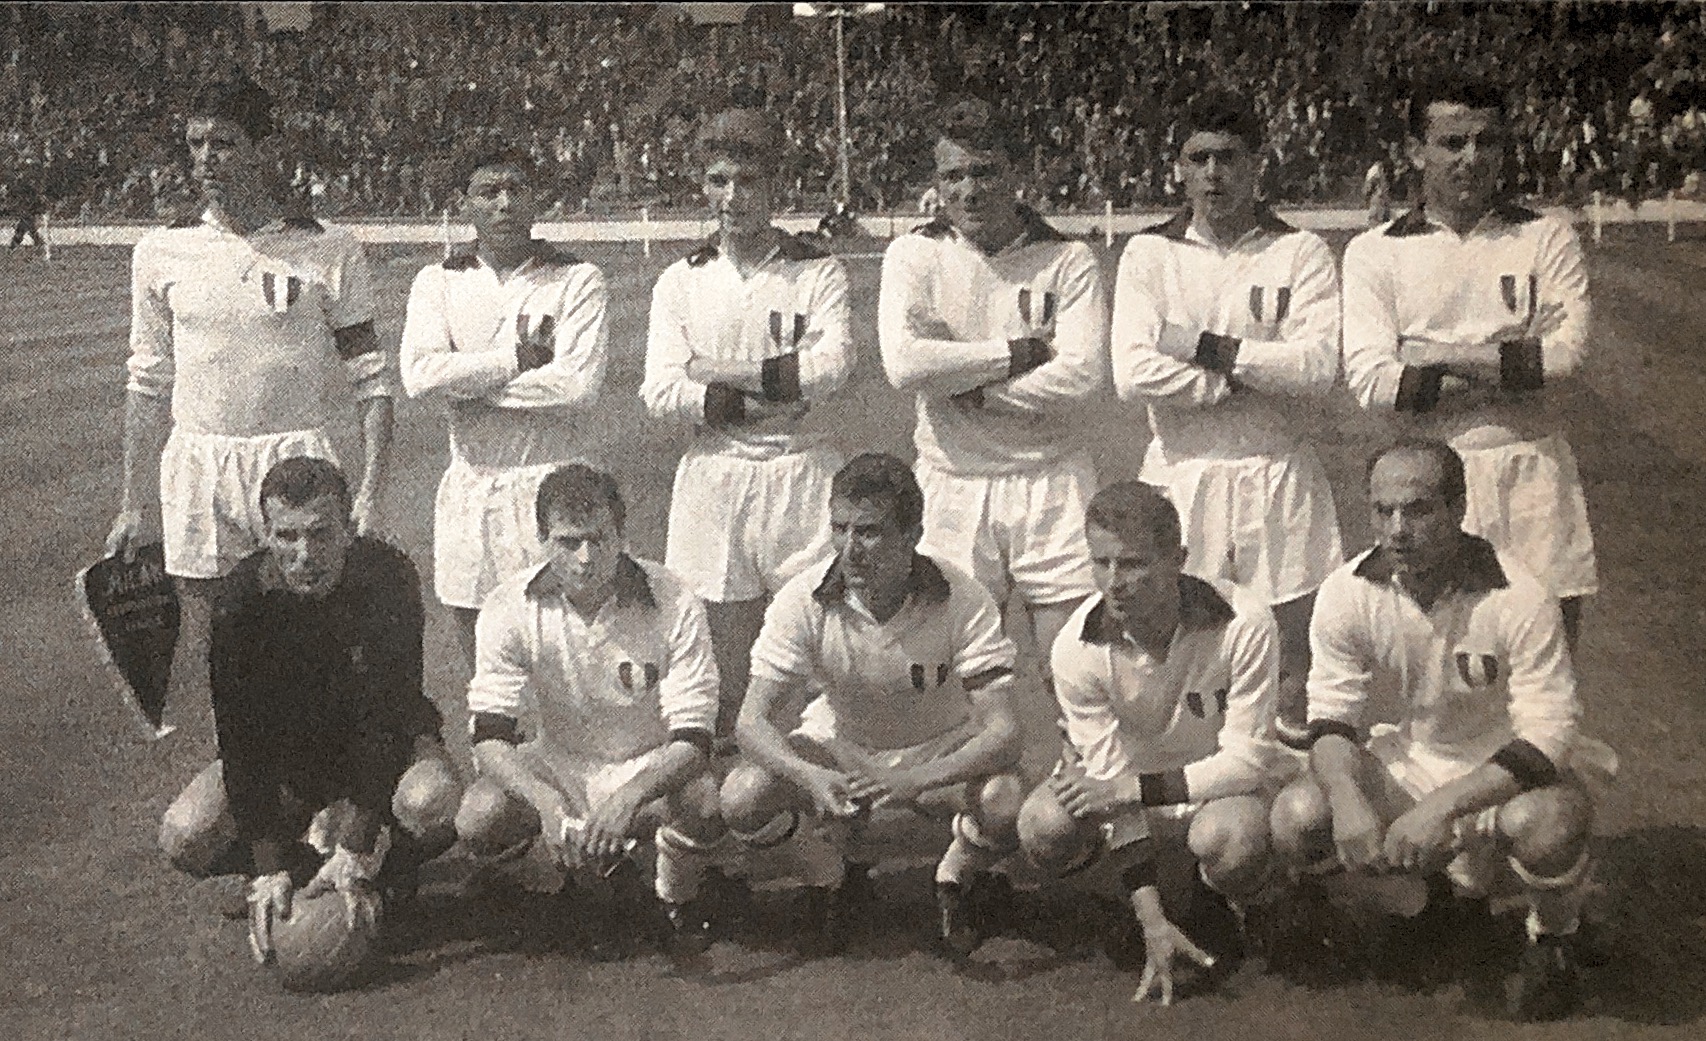 Milaan in Londen finale Europacup 1963